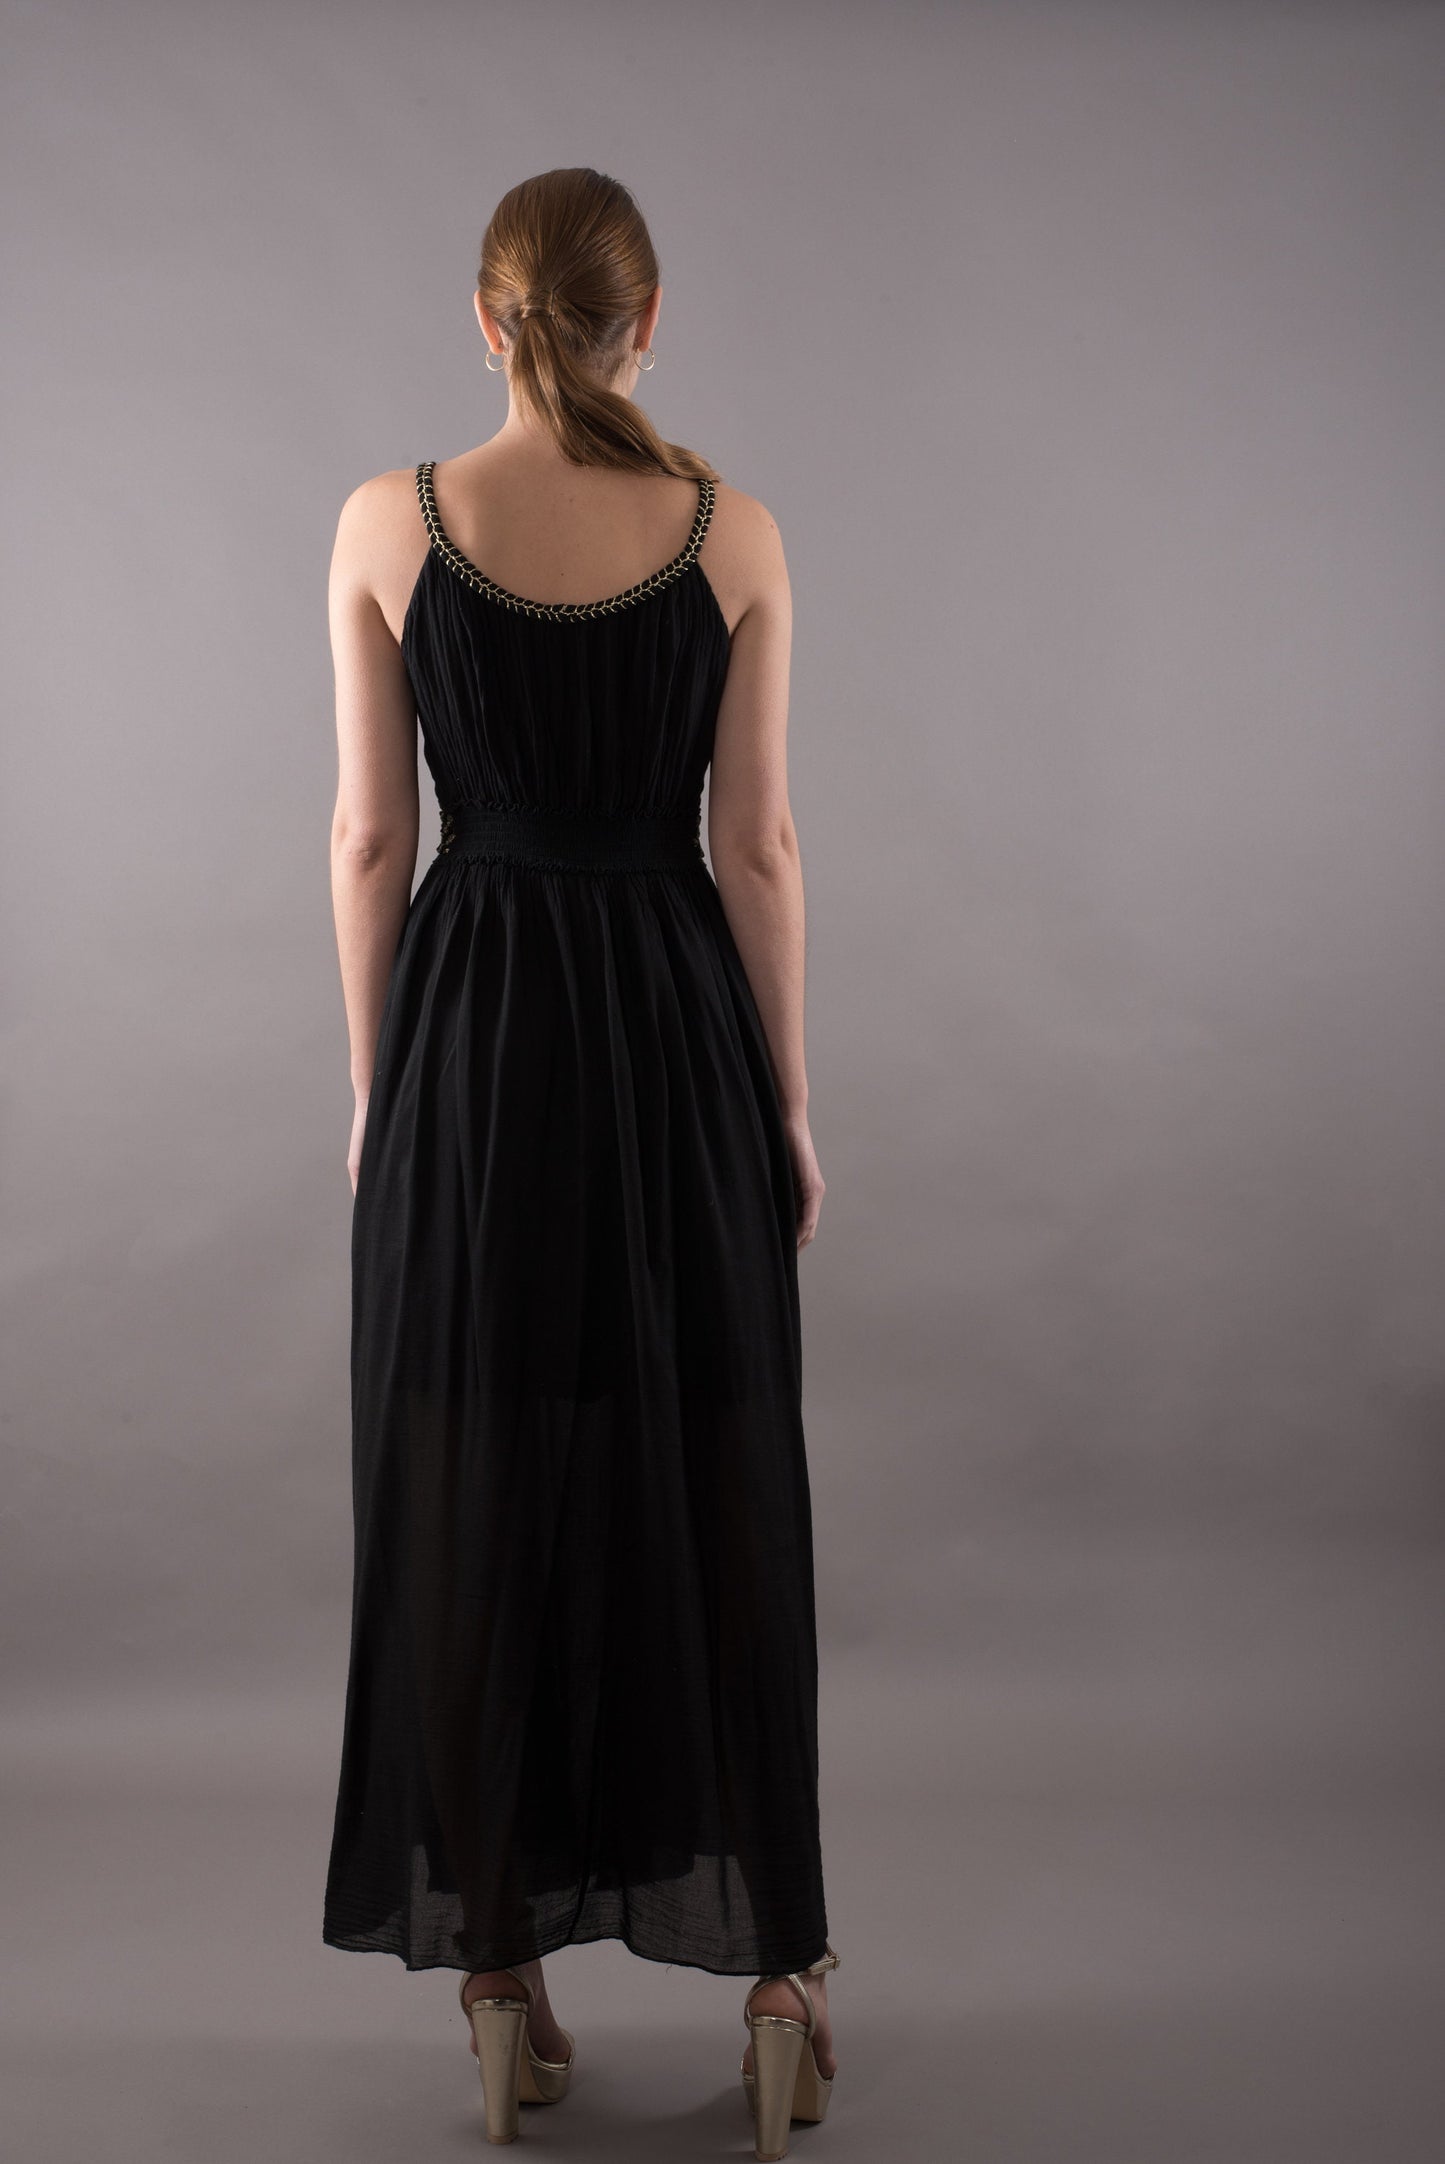 Cotton sundress, long summer maxi dress sleeveless, black evening dress, gold plait details, casual dress